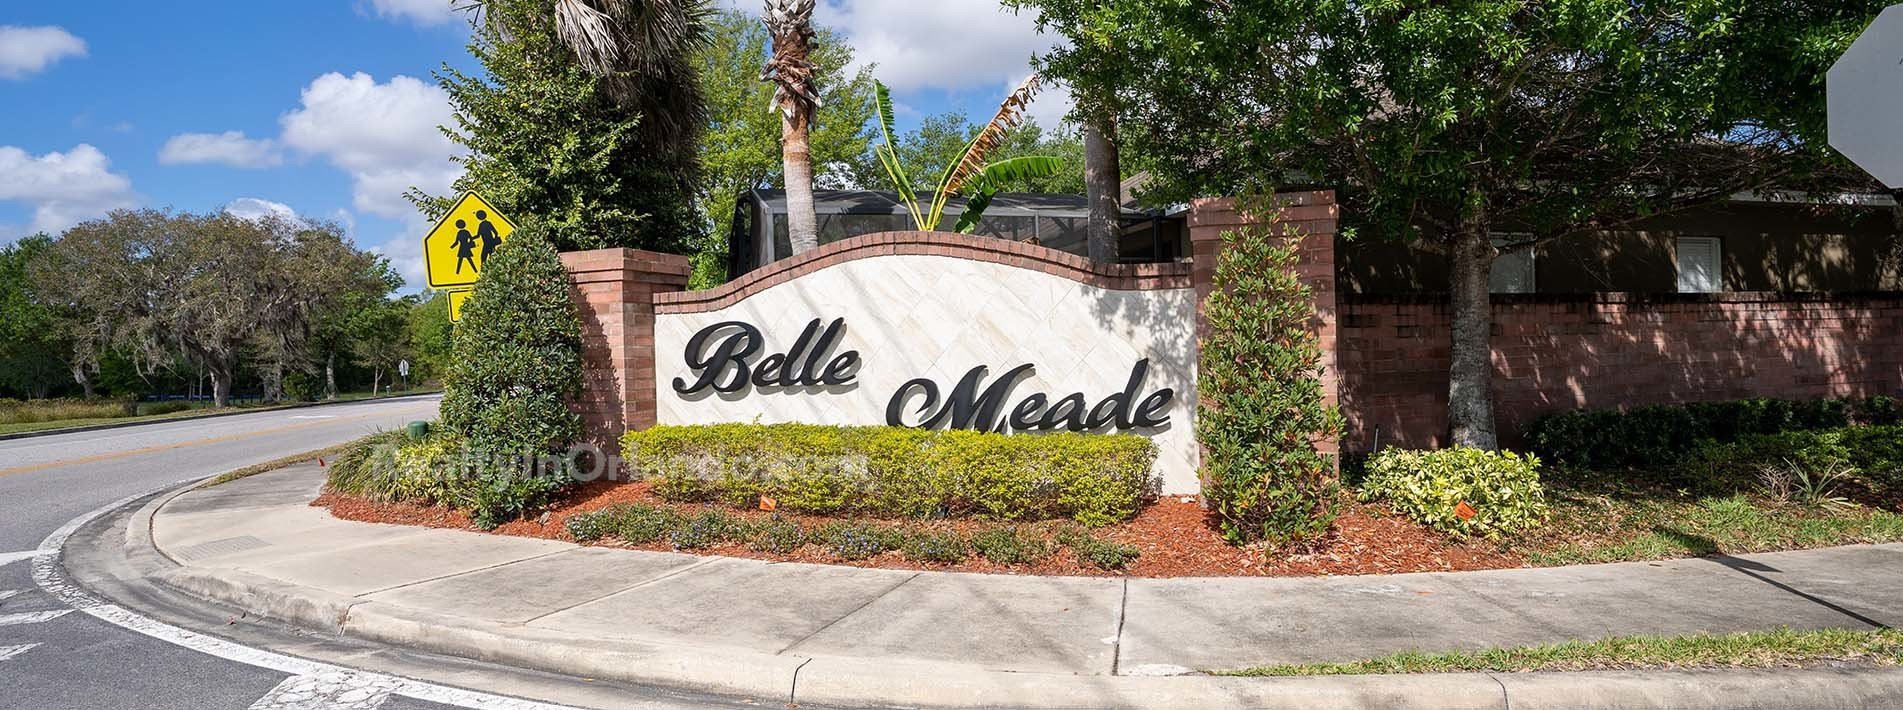 Belle Meade Winter Garden Real Estate